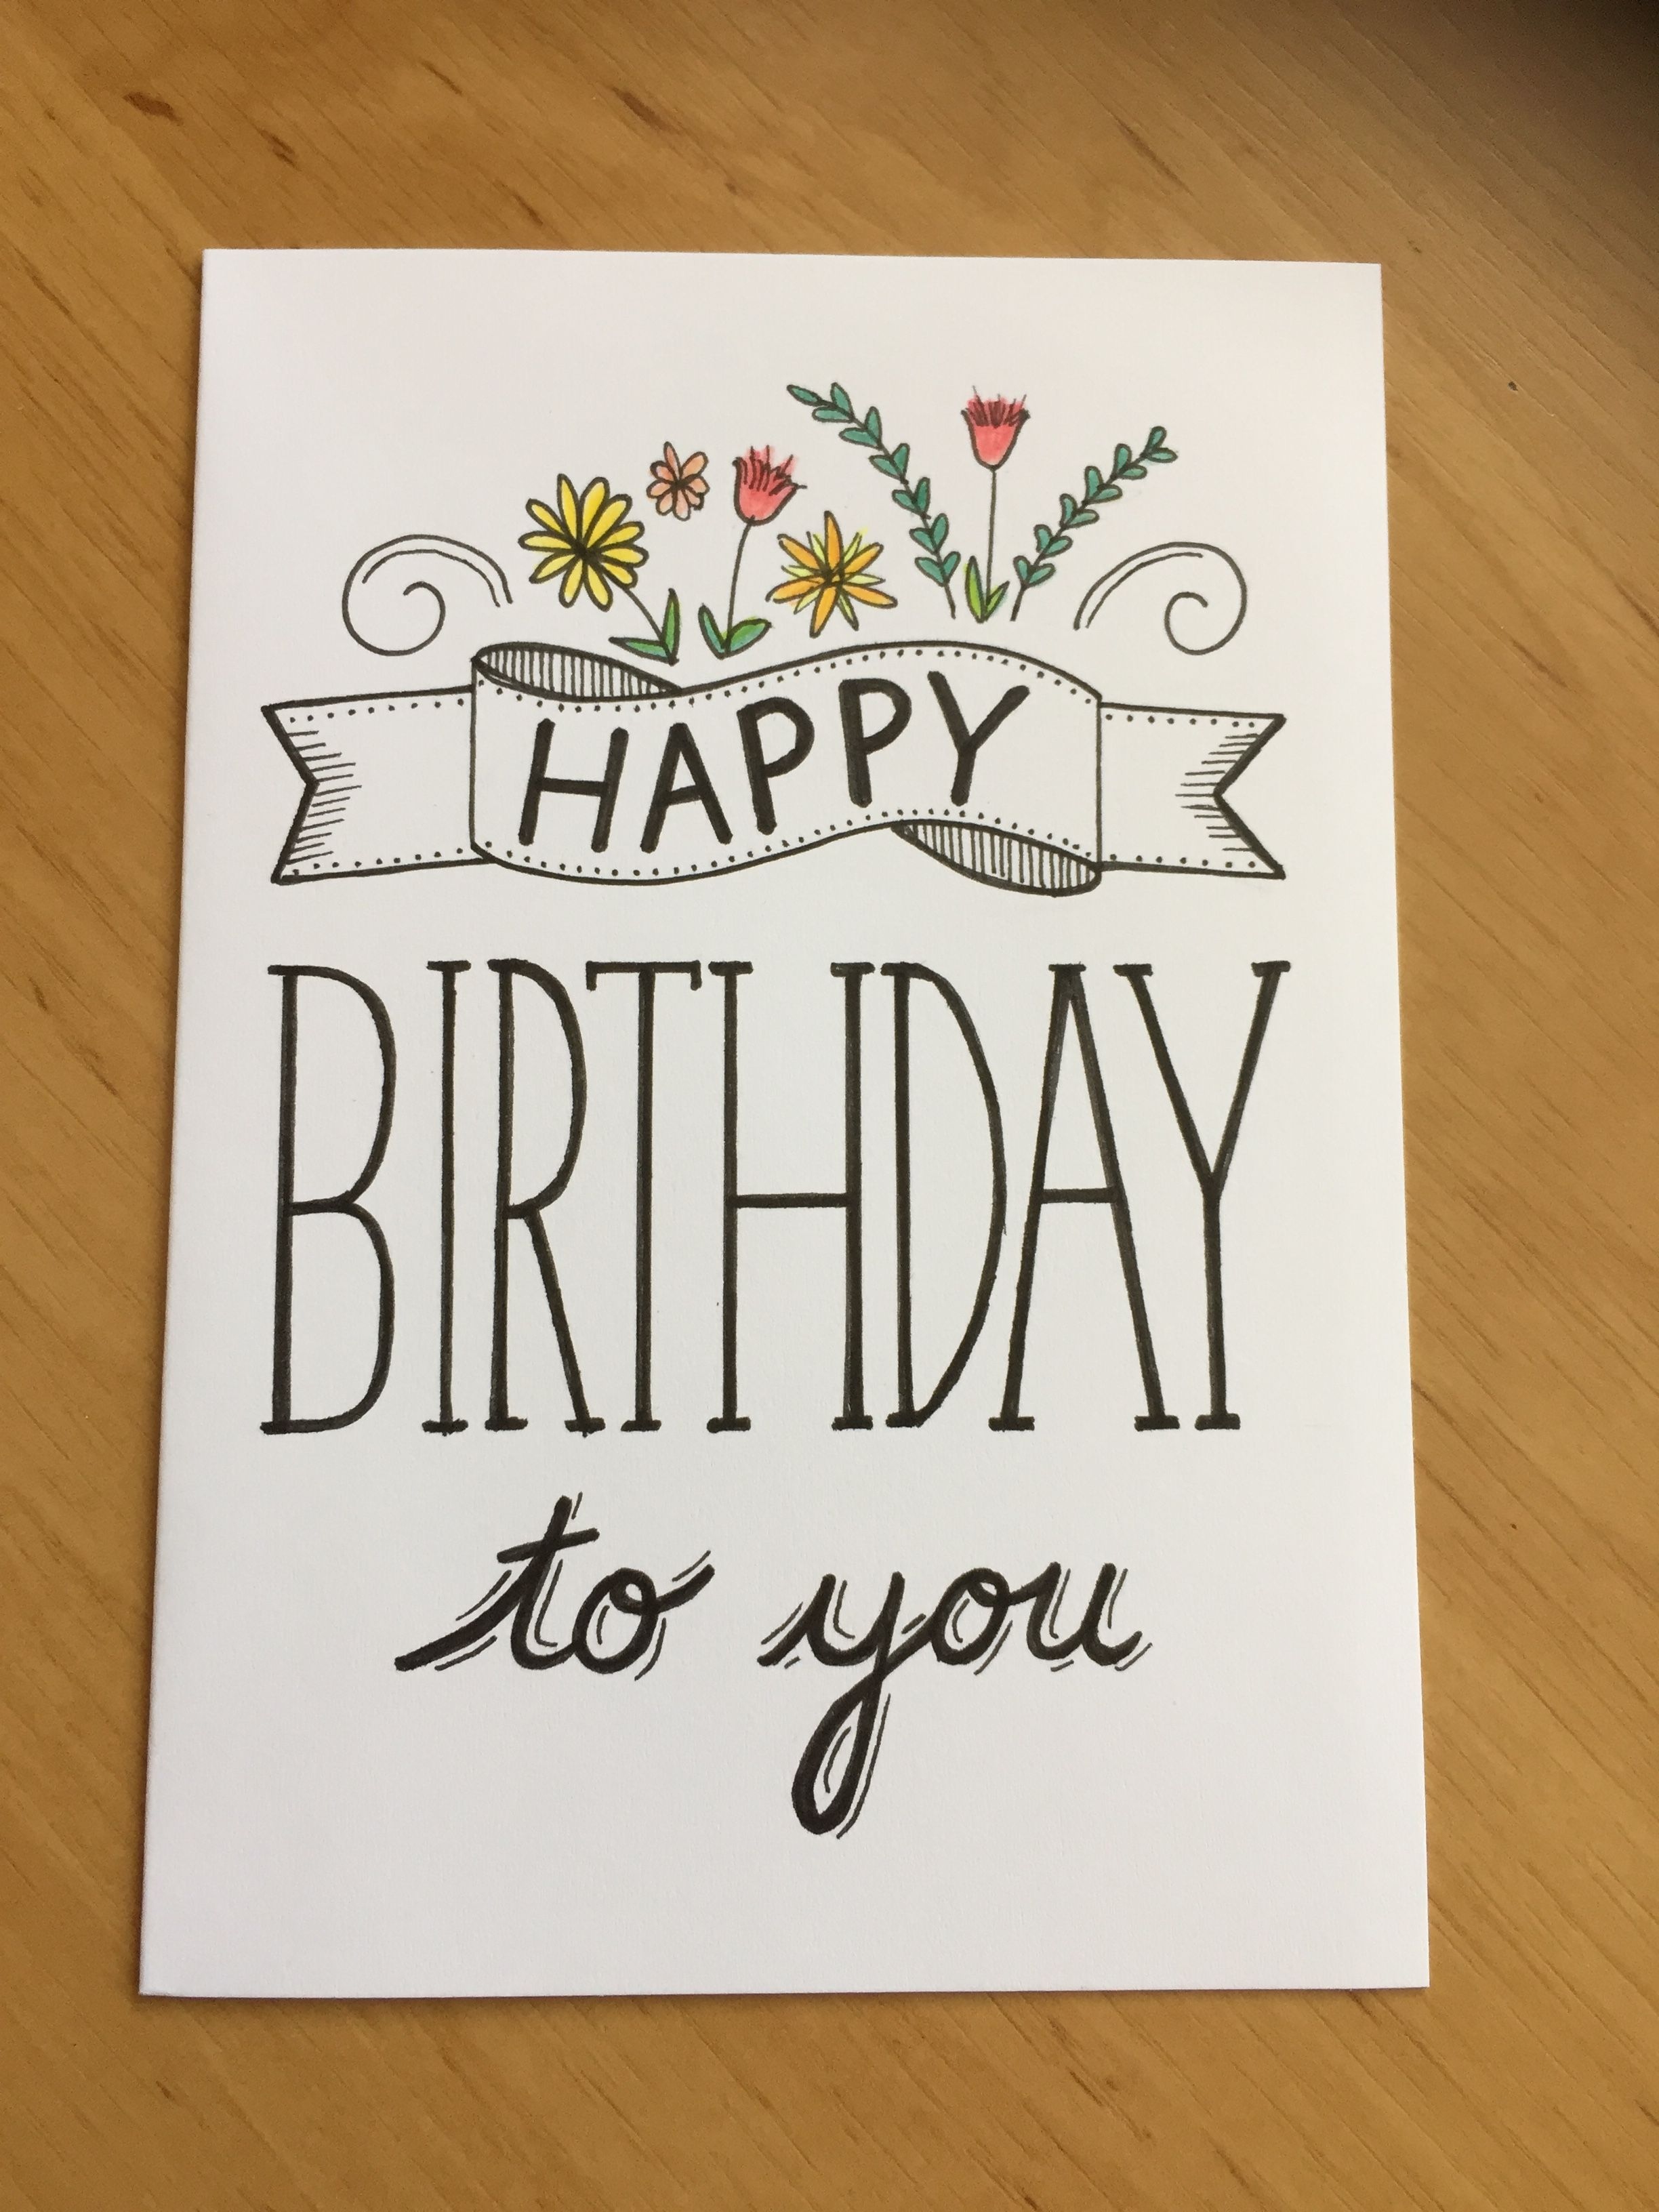 Boyfriend Birthday Card Ideas Birthday Card Ideas Easy Cake Drawing For Husband Greeting Coreldraw